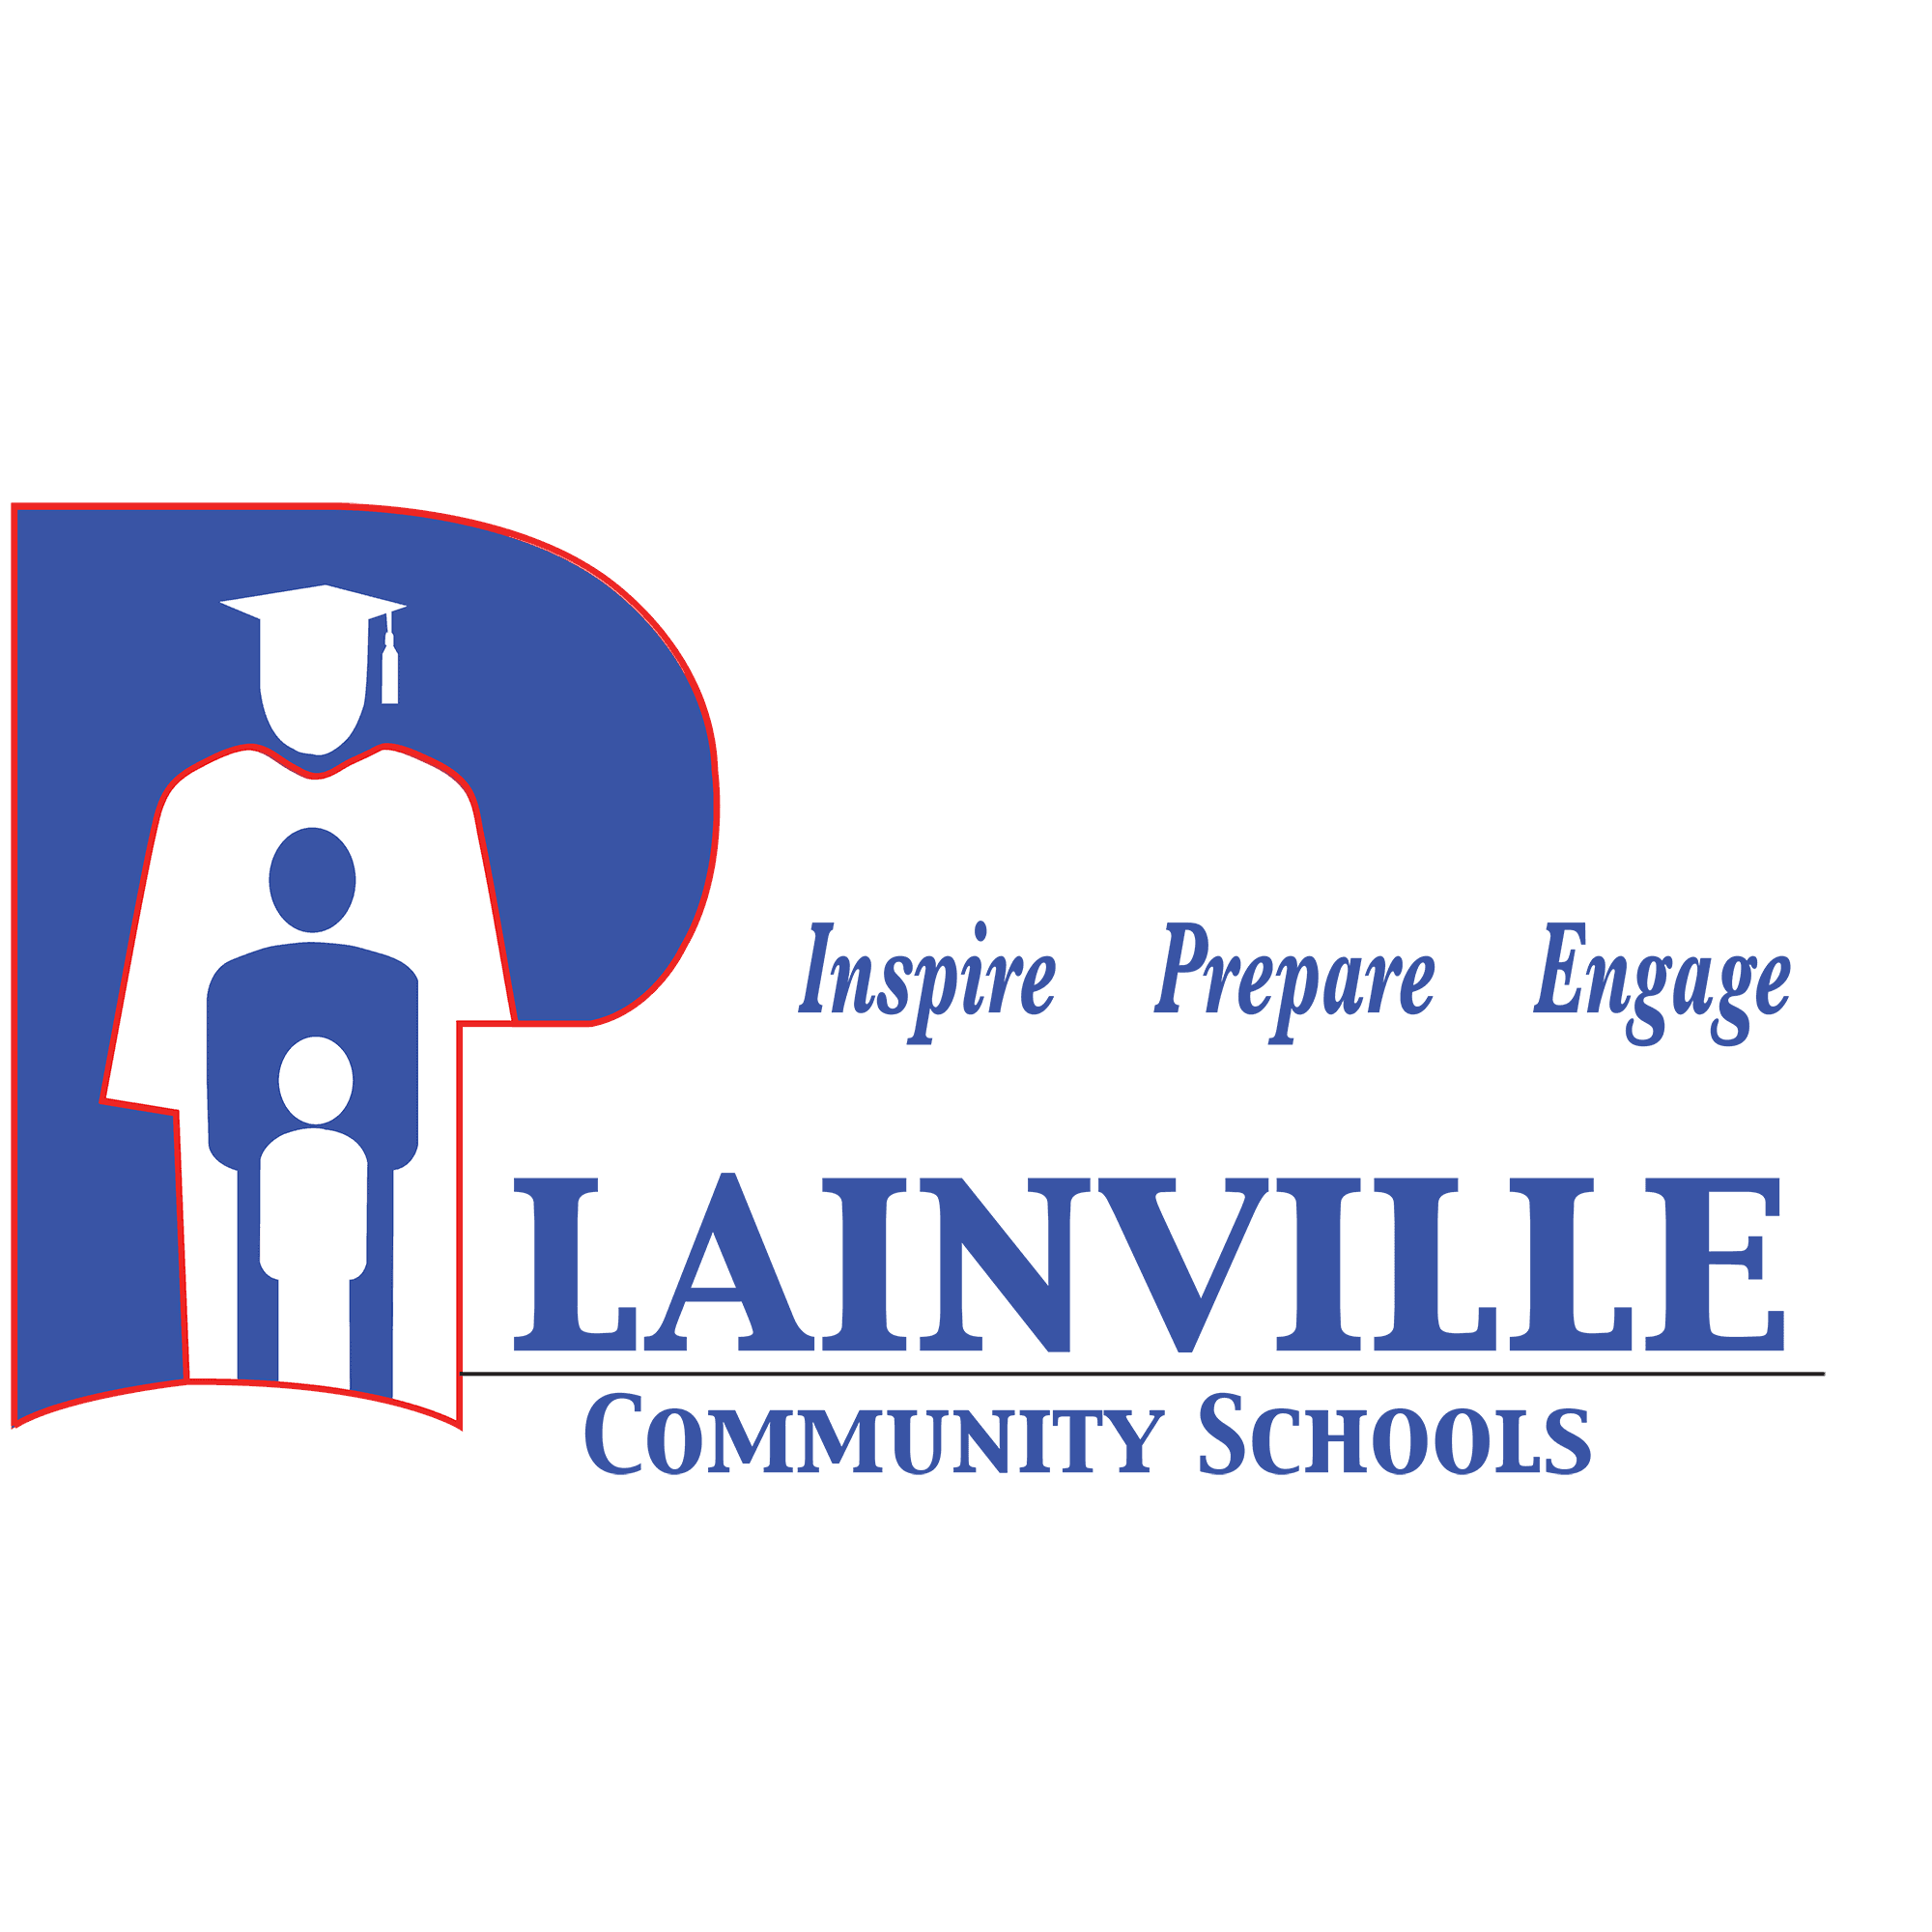 Plainville Community Schools